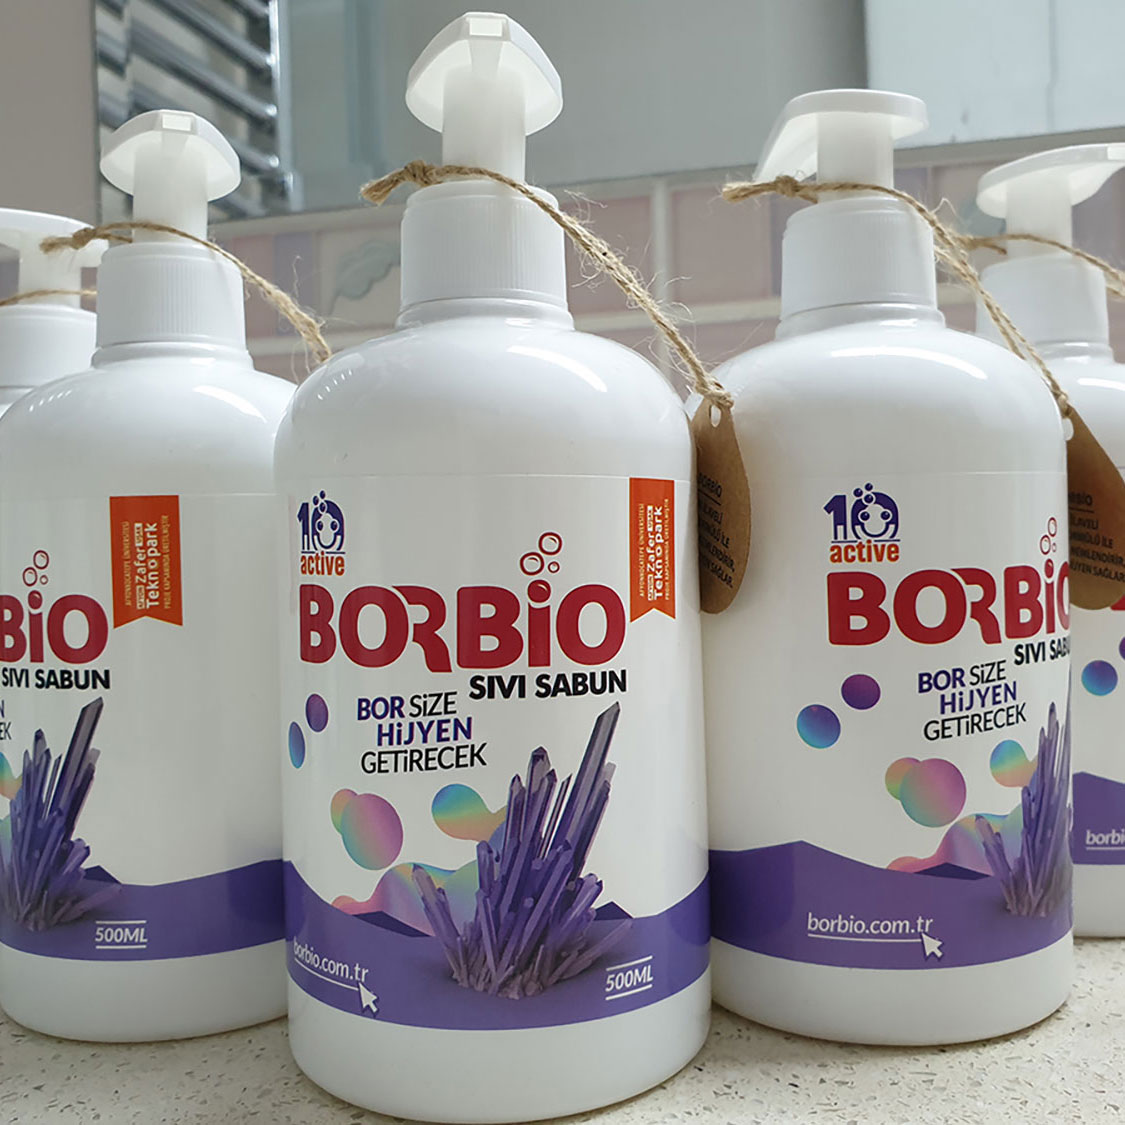 Borbio Sıvı Sabun